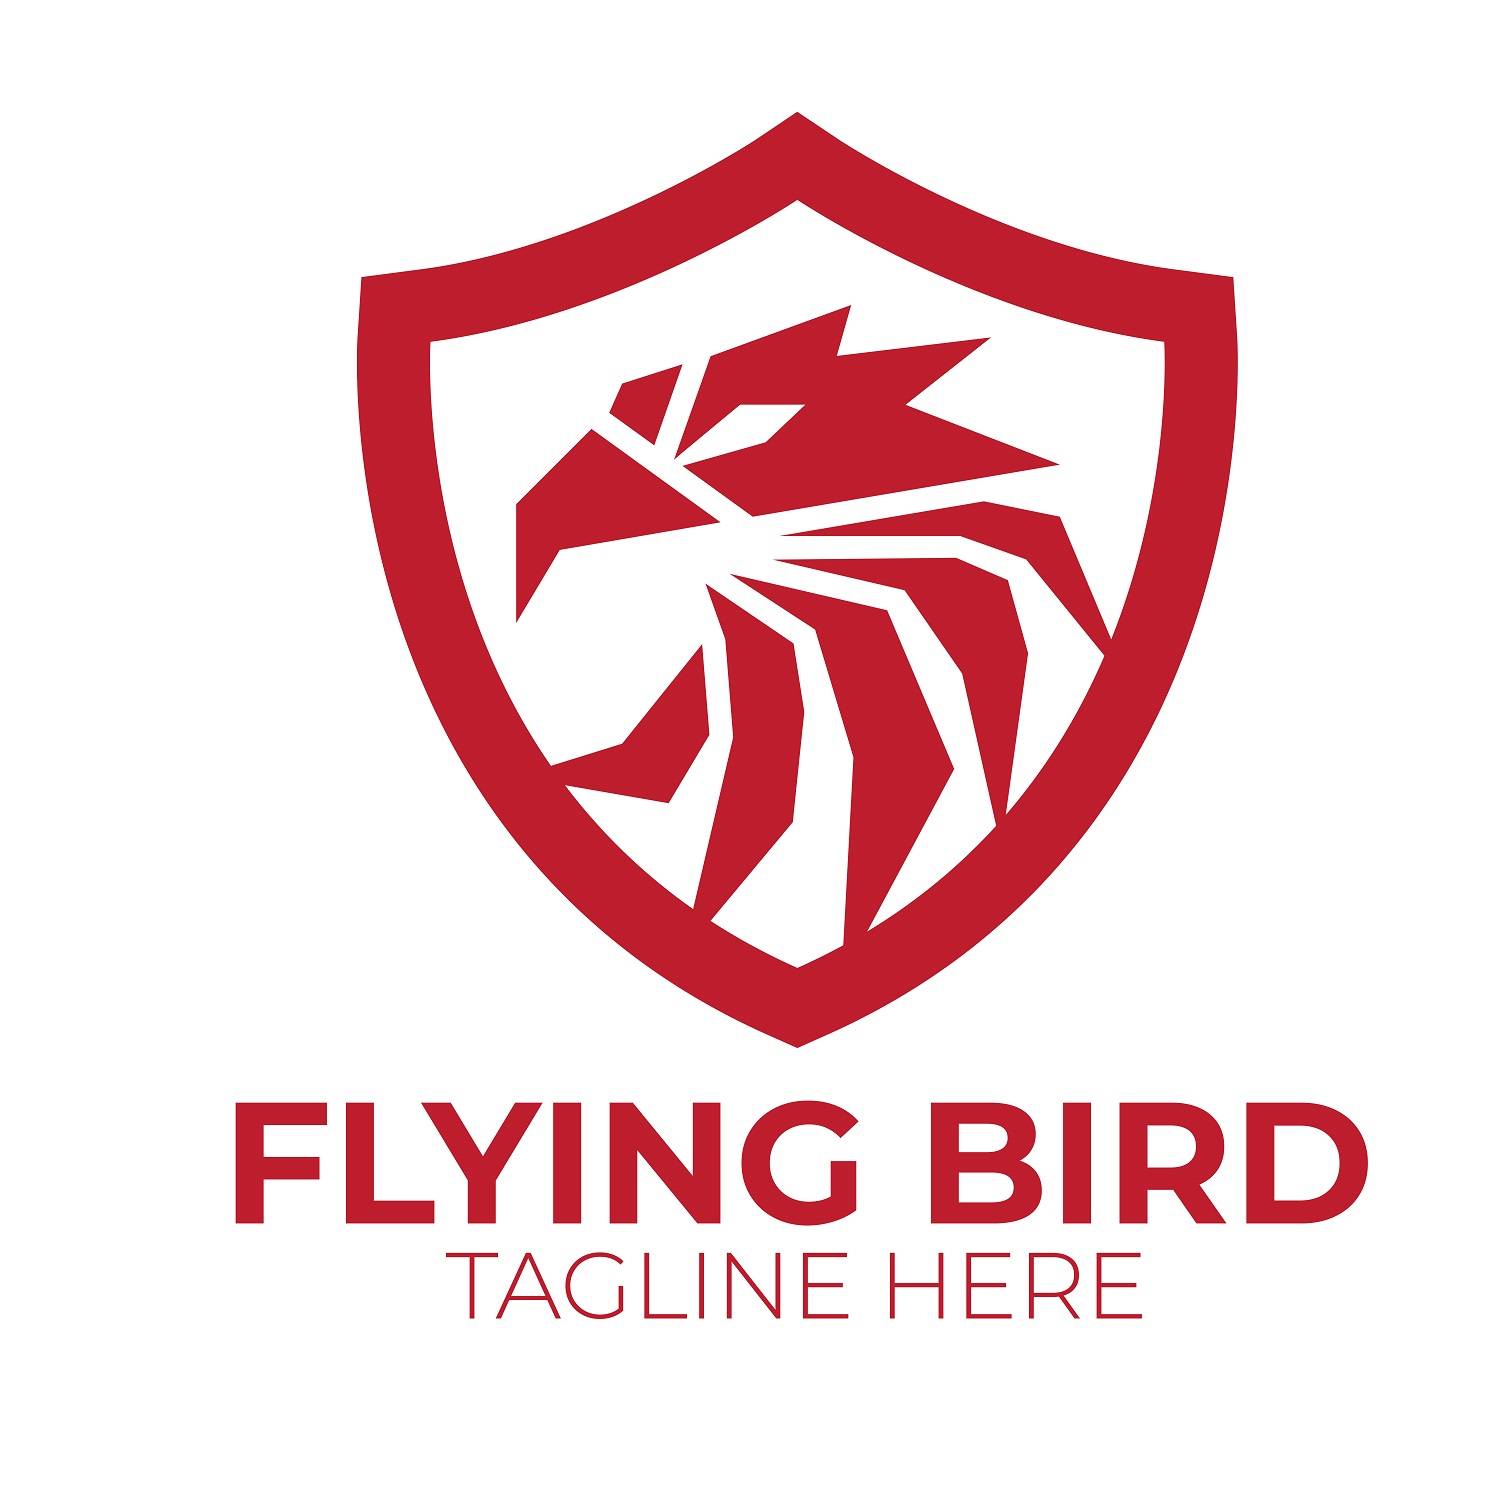 Falcon face flying bird logo